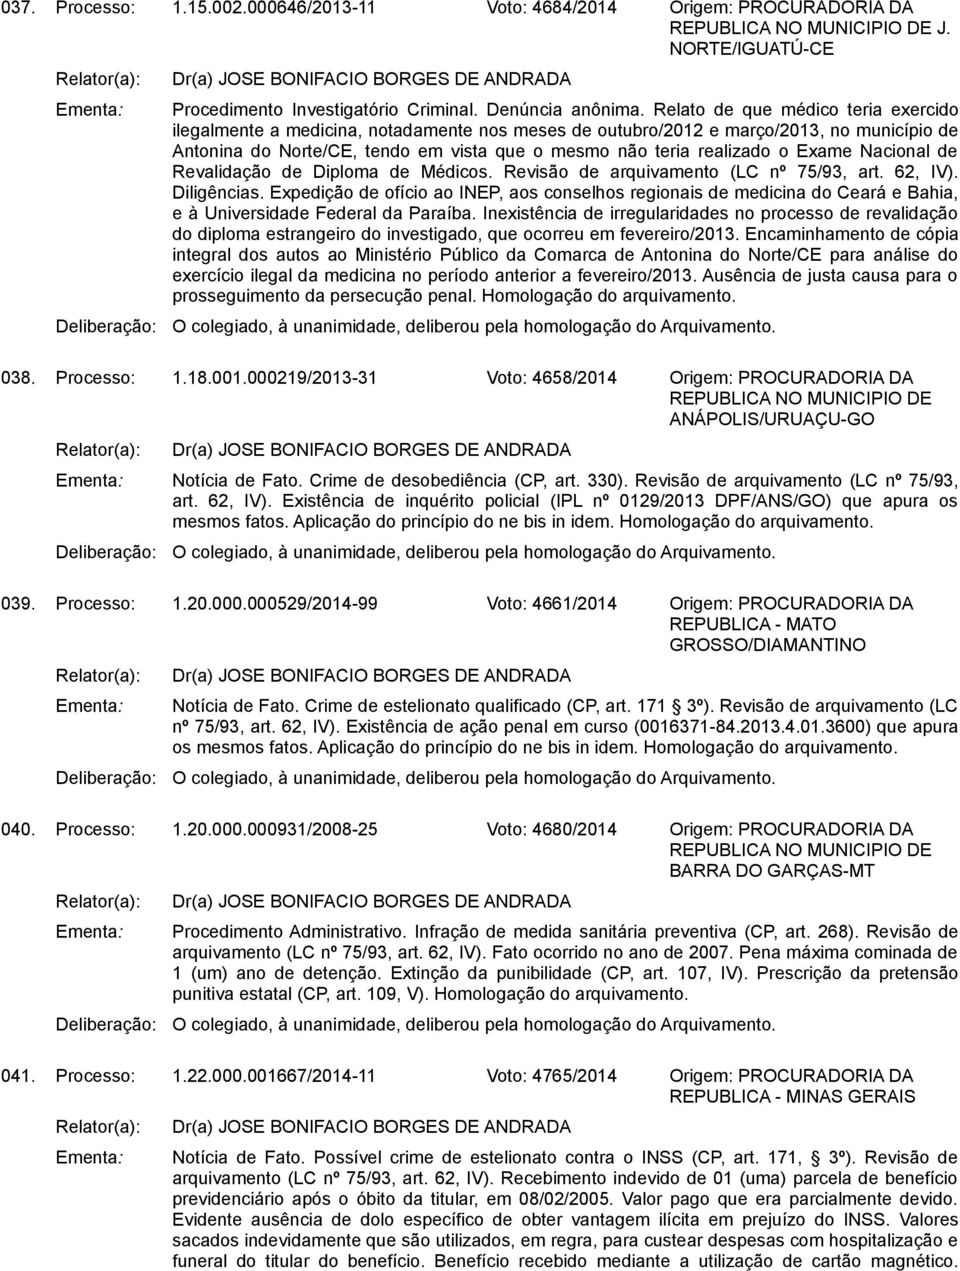 Exame Nacional de Revalidação de Diploma de Médicos. Revisão de arquivamento (LC nº 75/93, art. 62, IV). Diligências.